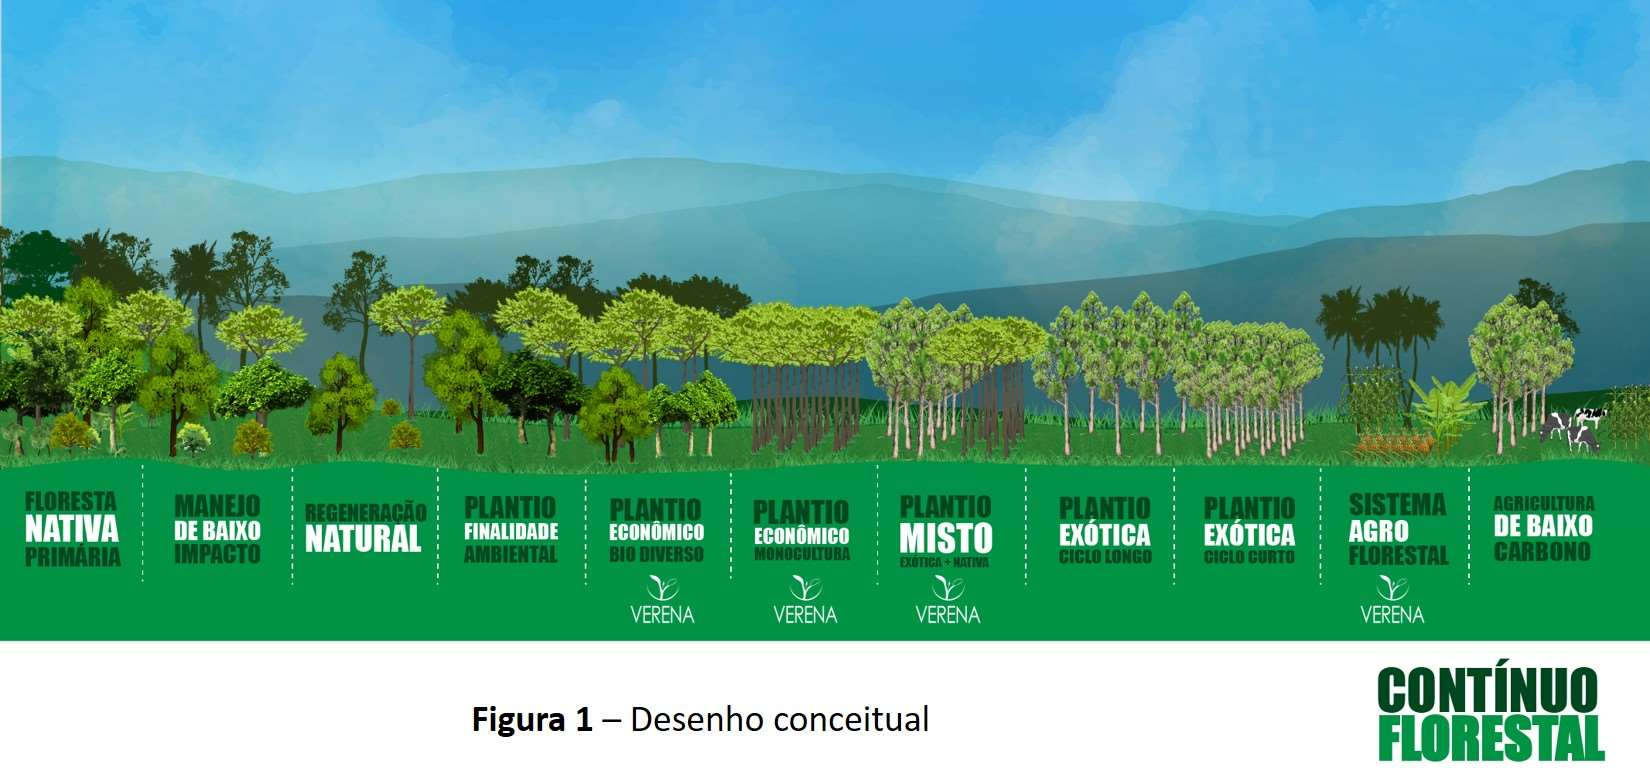 dessa área ocorre por regeneração natural, a oportunidade para reflorestamento com fins econômicos é real, mas sua escala é desafiadora.